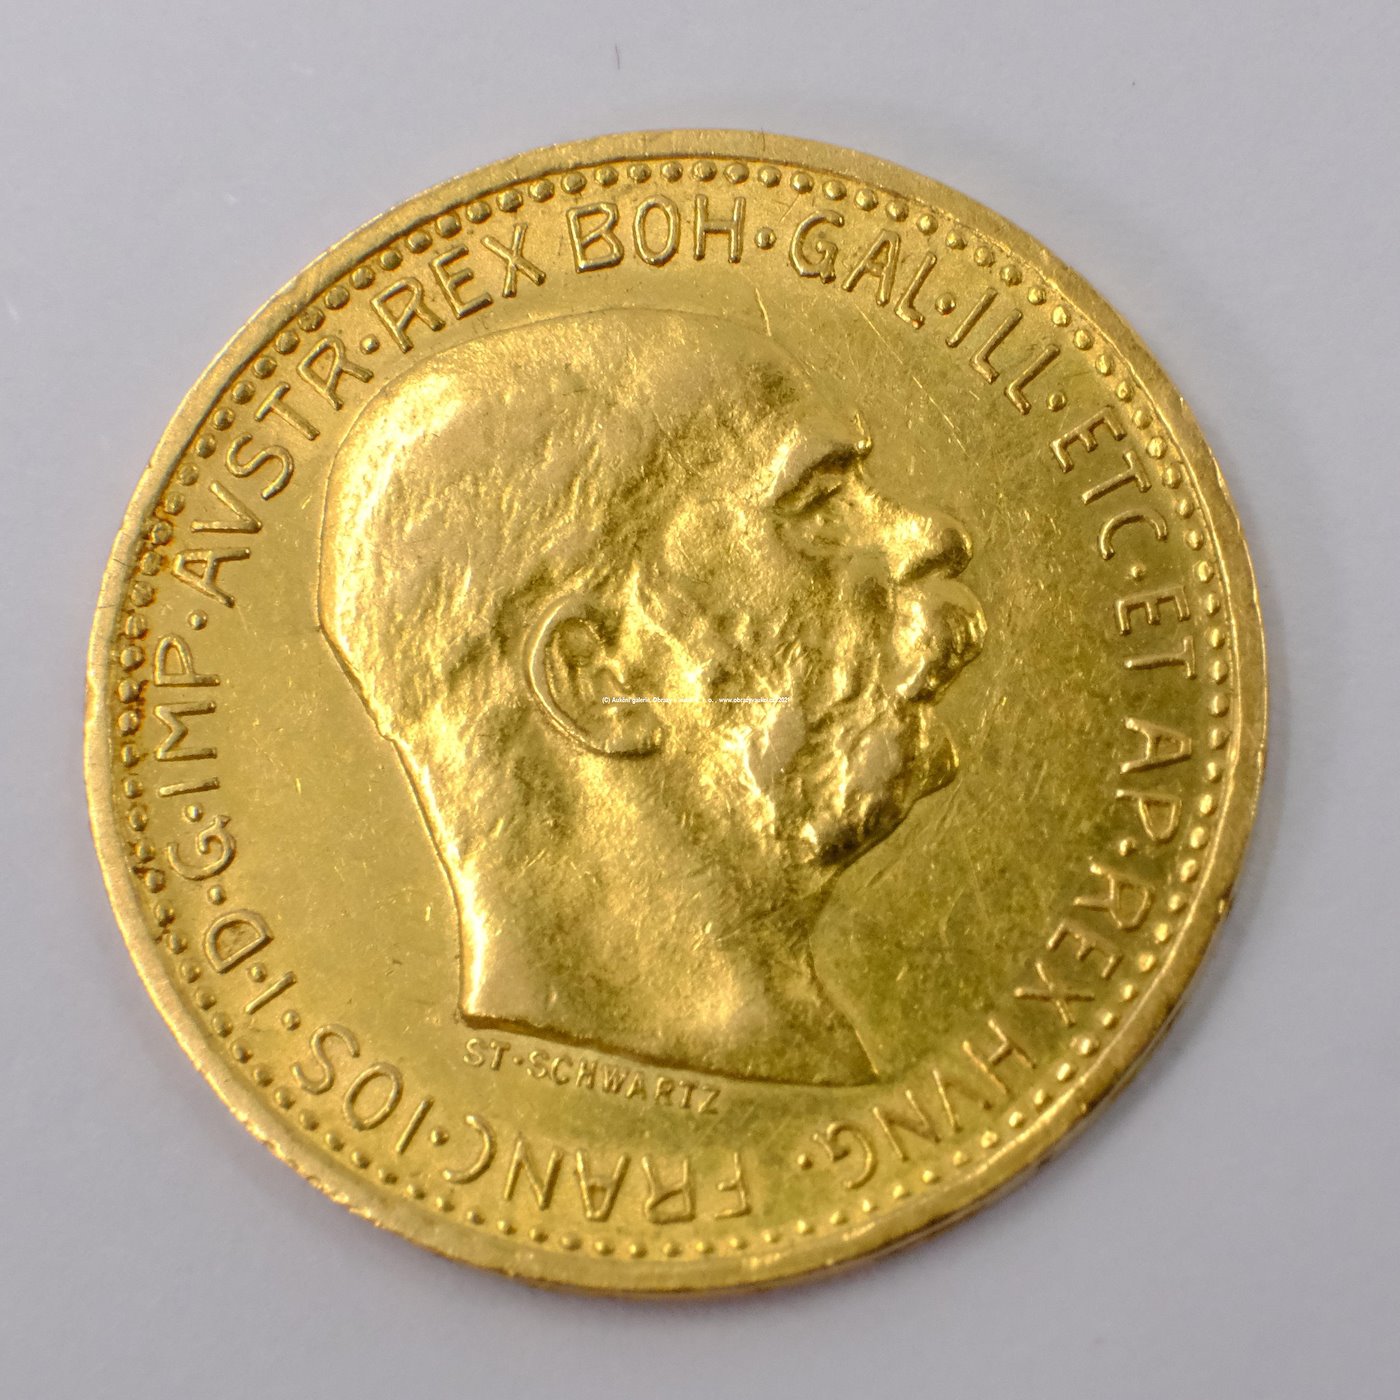 .. - Rakousko Uhersko zlatá 10 Koruna 1910 rakouská. Zlato 900/1000, hrubá hmotnost mince 3,387g